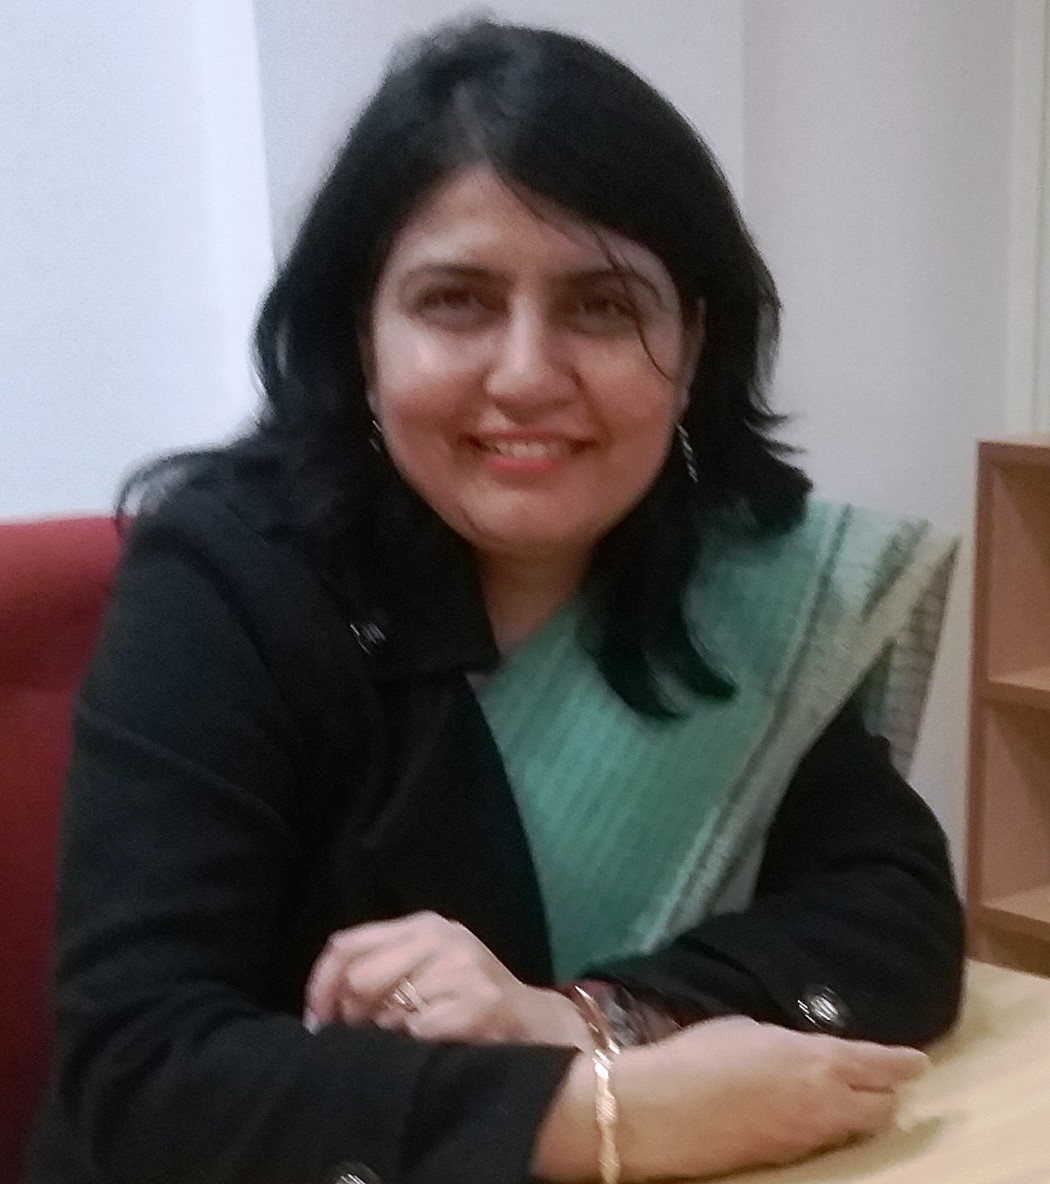 Dr Suphiya Khan